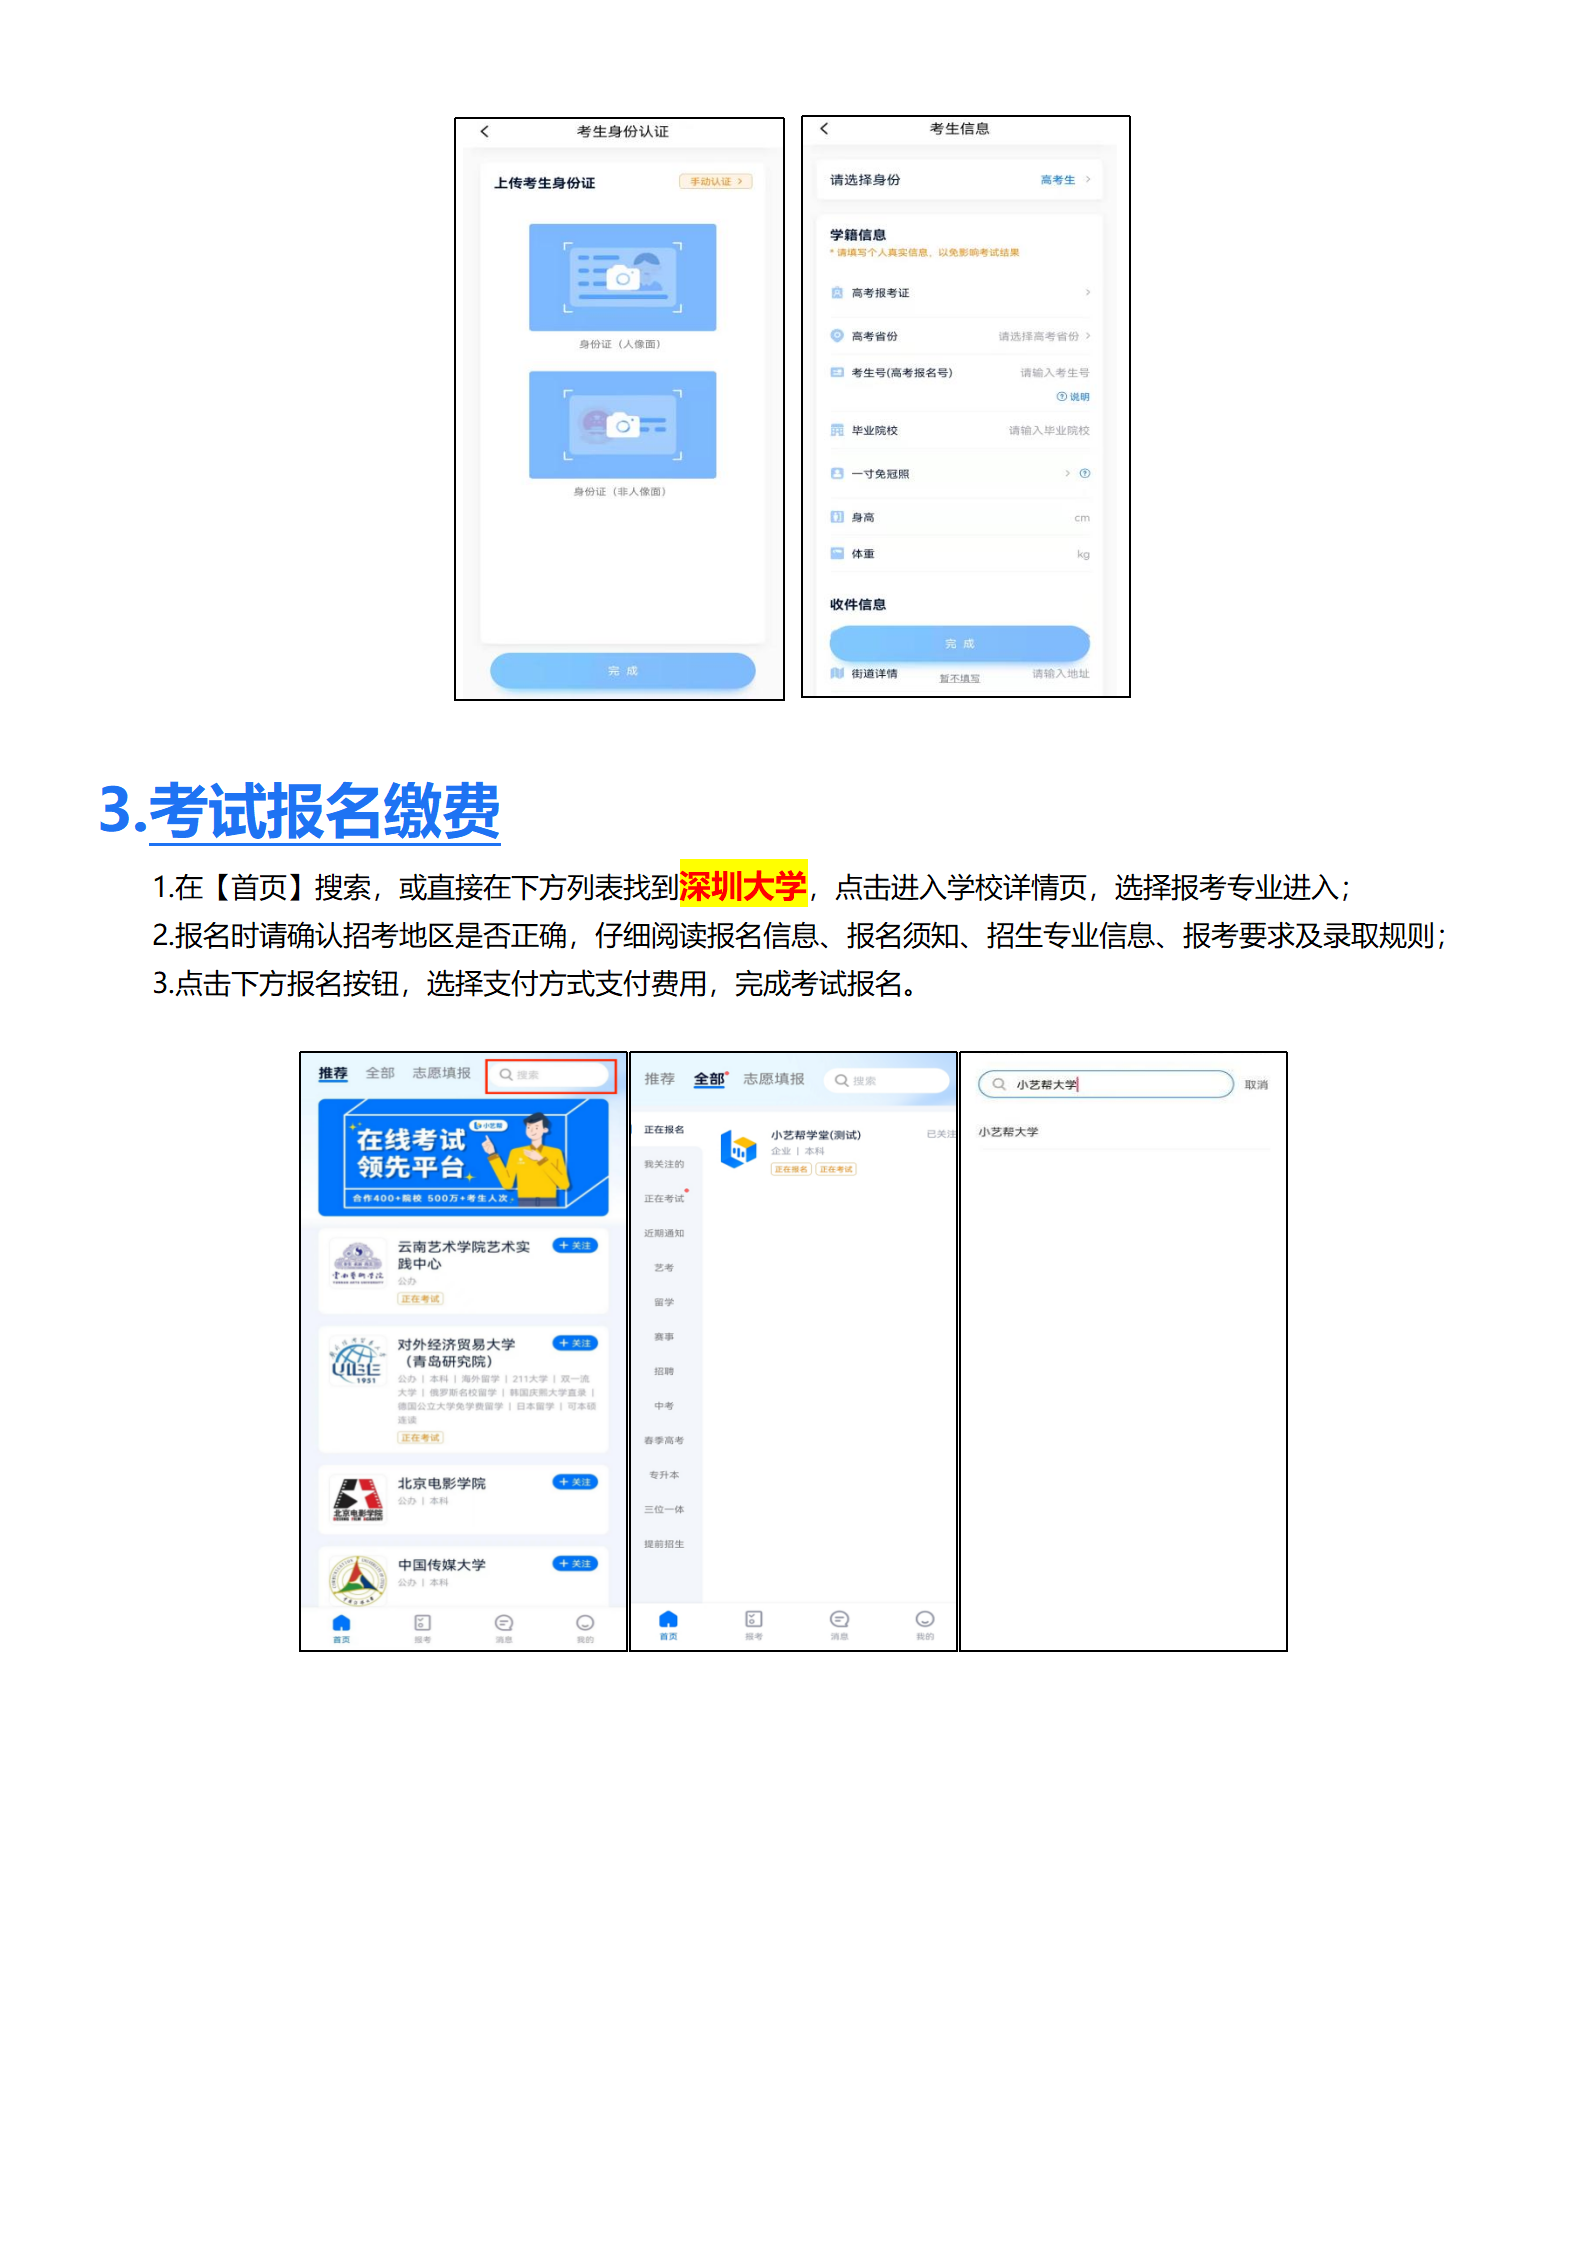 附件1：深圳大学-小艺帮4.0用户操作手册_04.png